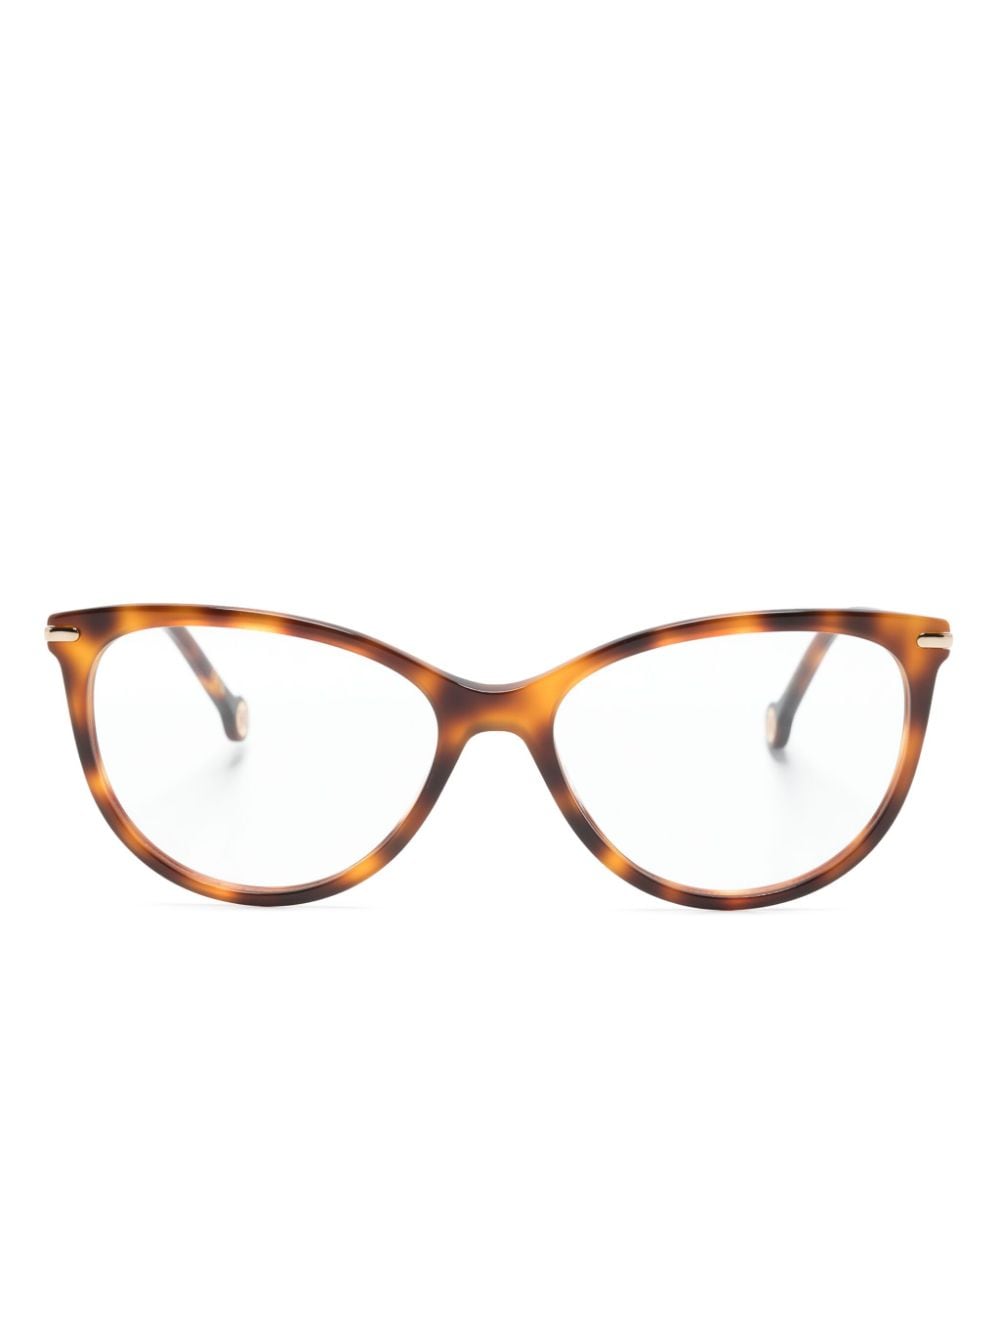 Carolina Herrera Tortoiseshell Cat-eye Glasses In Brown